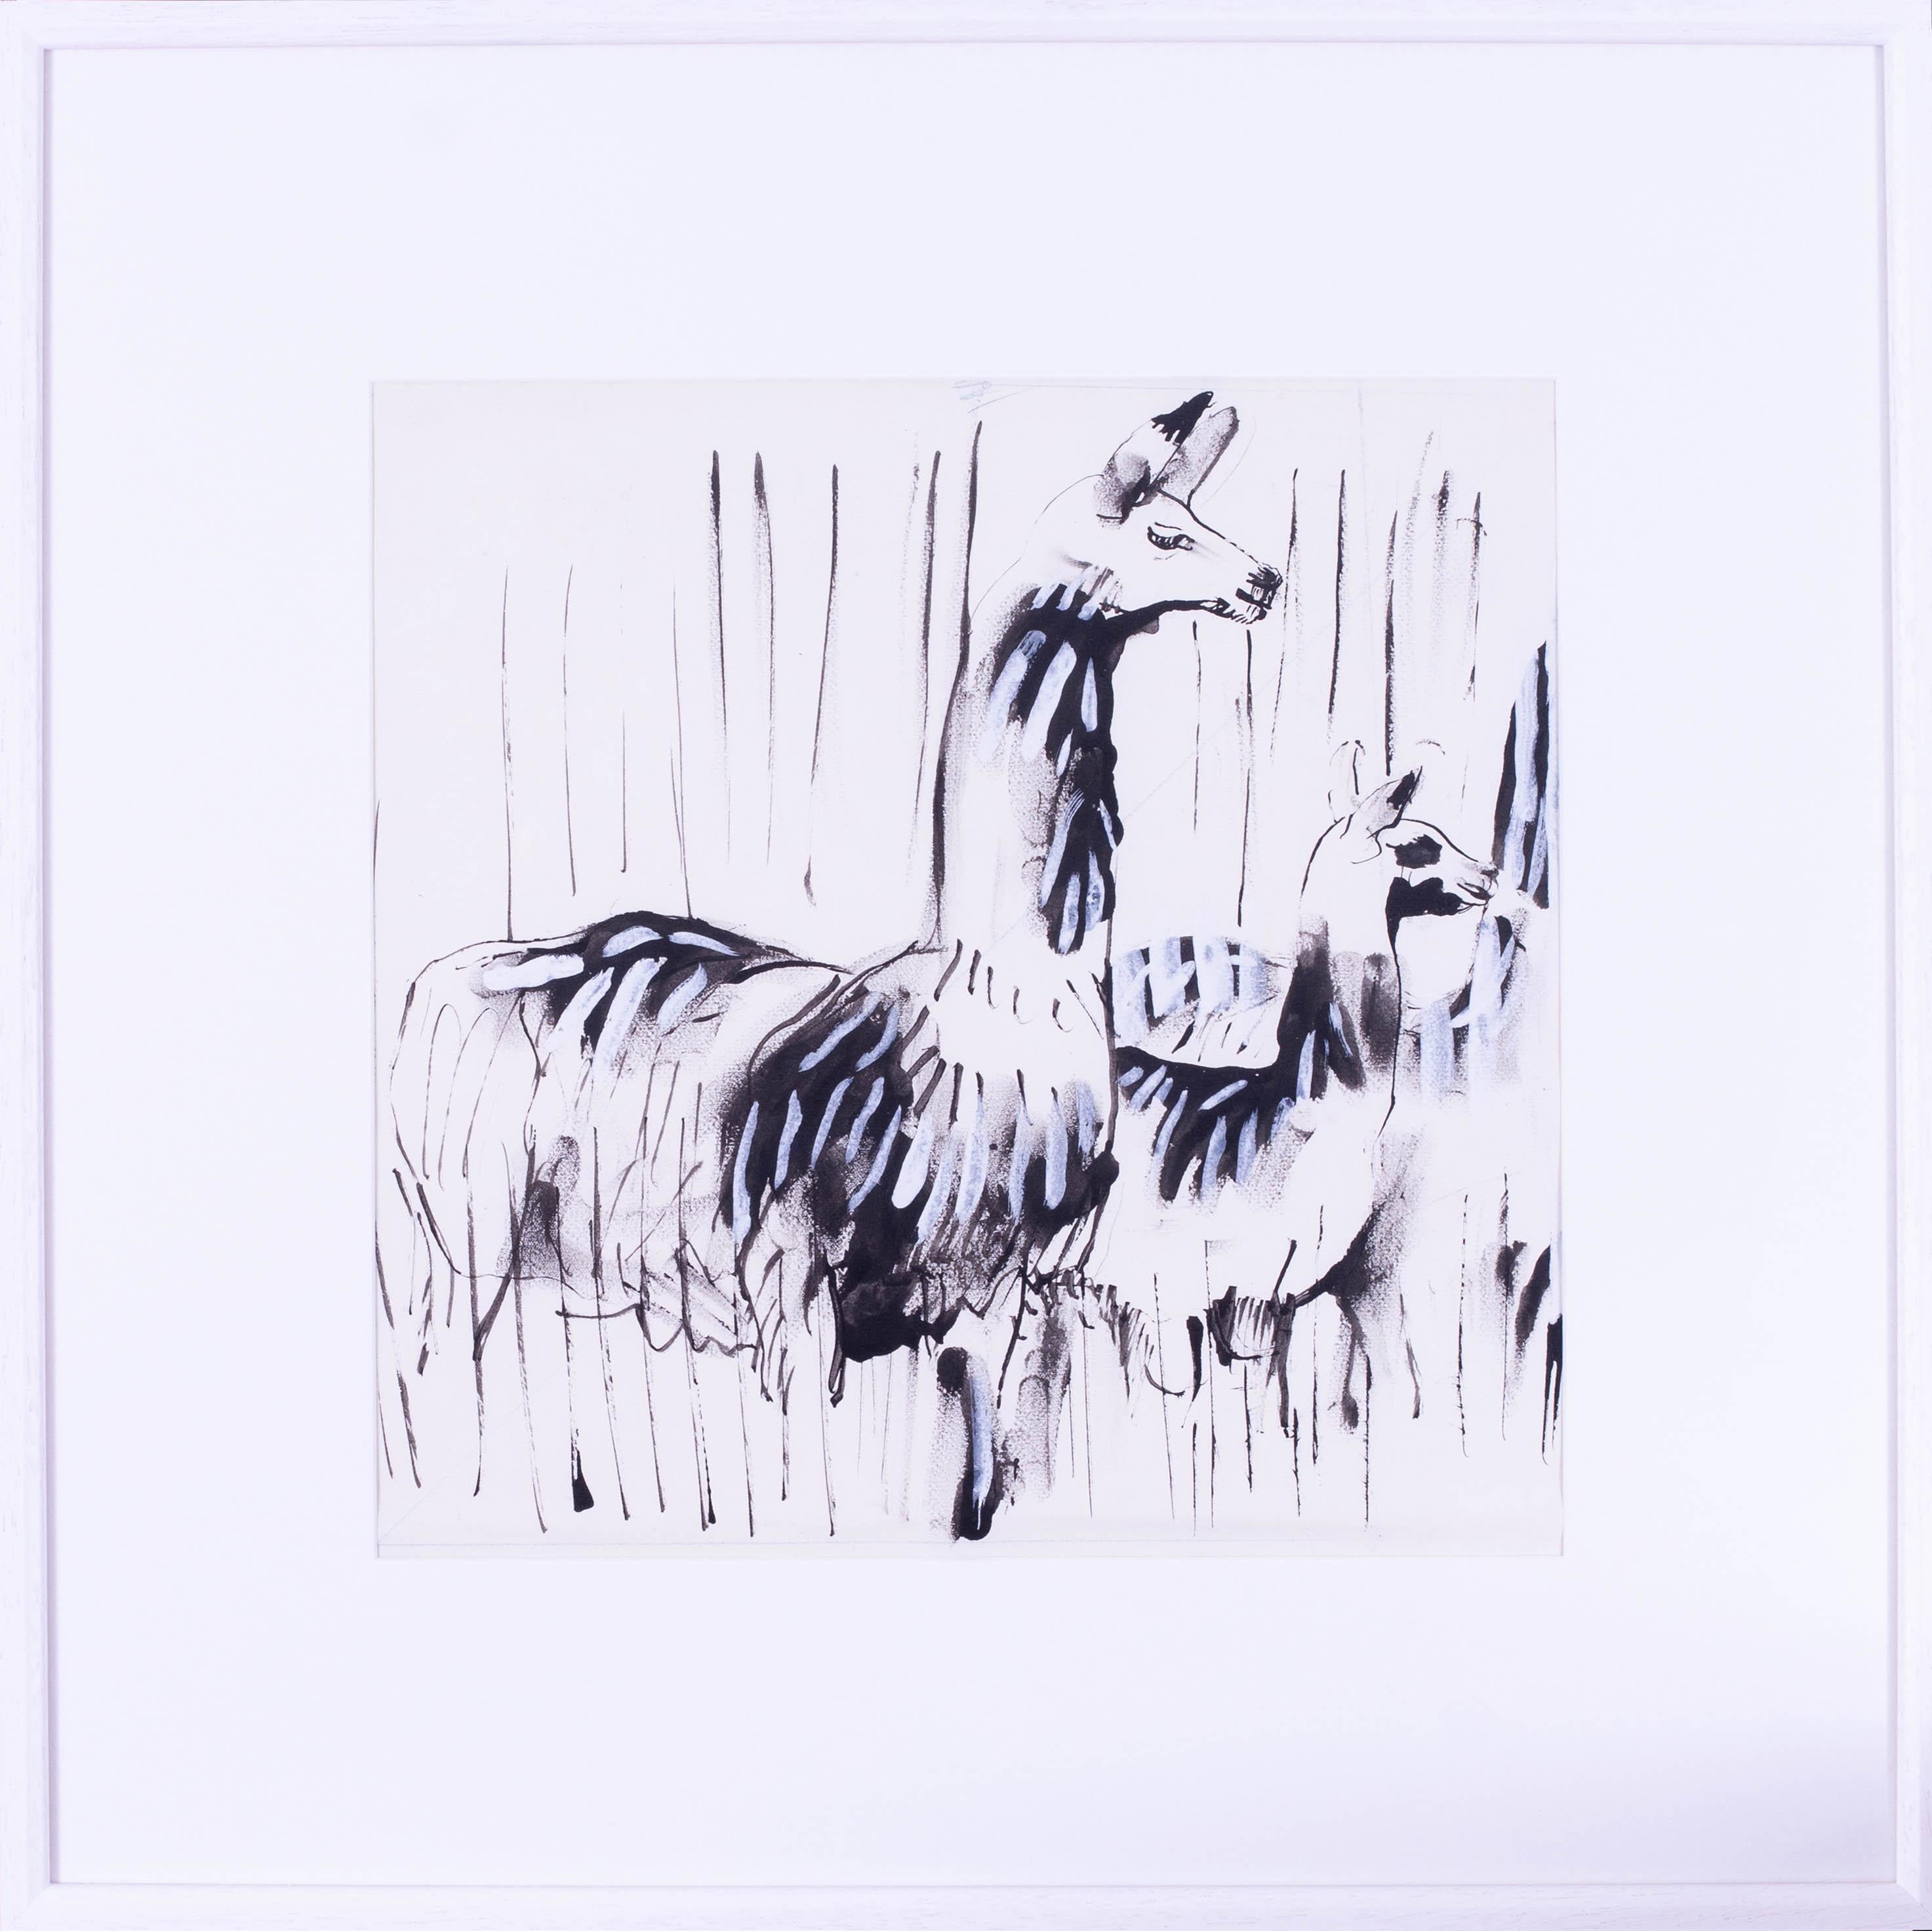 Alpaca von Sven Berlin, moderner britischer Künstler, Schule von St. Ives, Zeichnung